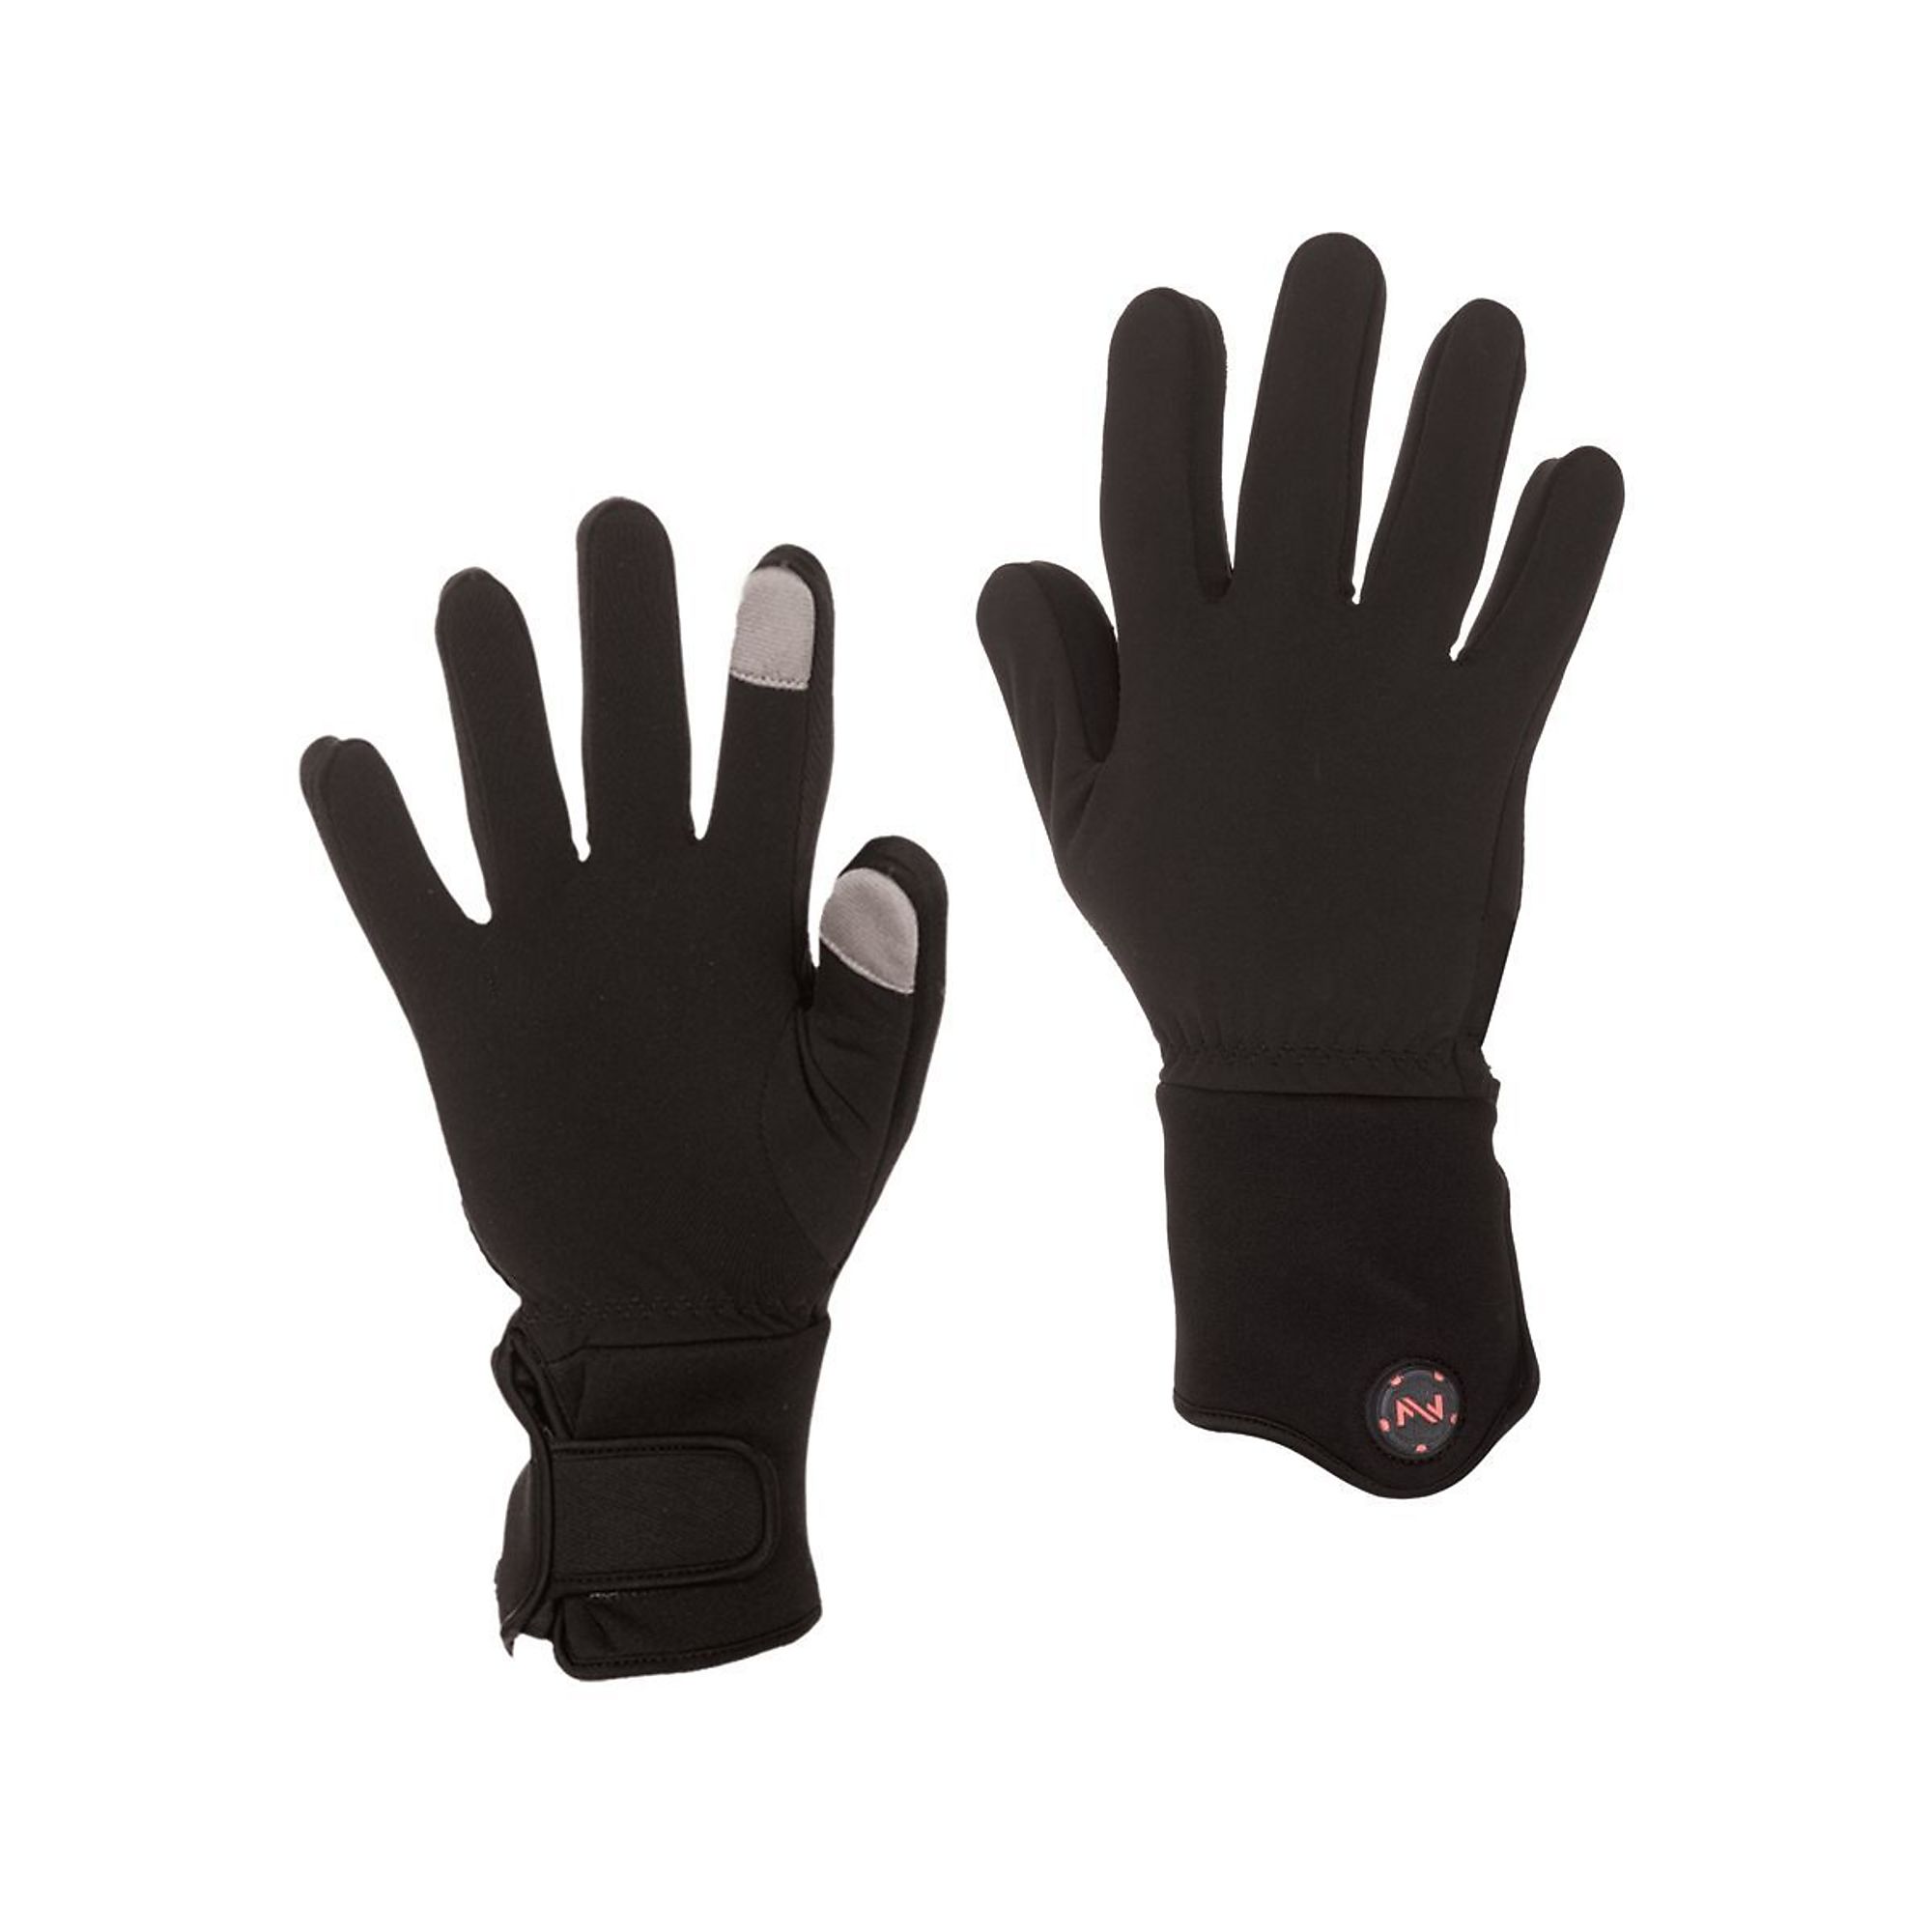 Fieldsheer, Glove Liner | Unisex | 7.4V | BLK | 3X, Size 3XL, Color Black, Included (qty.) 2 Model MWUG06010720 -  MOBILE WARMING